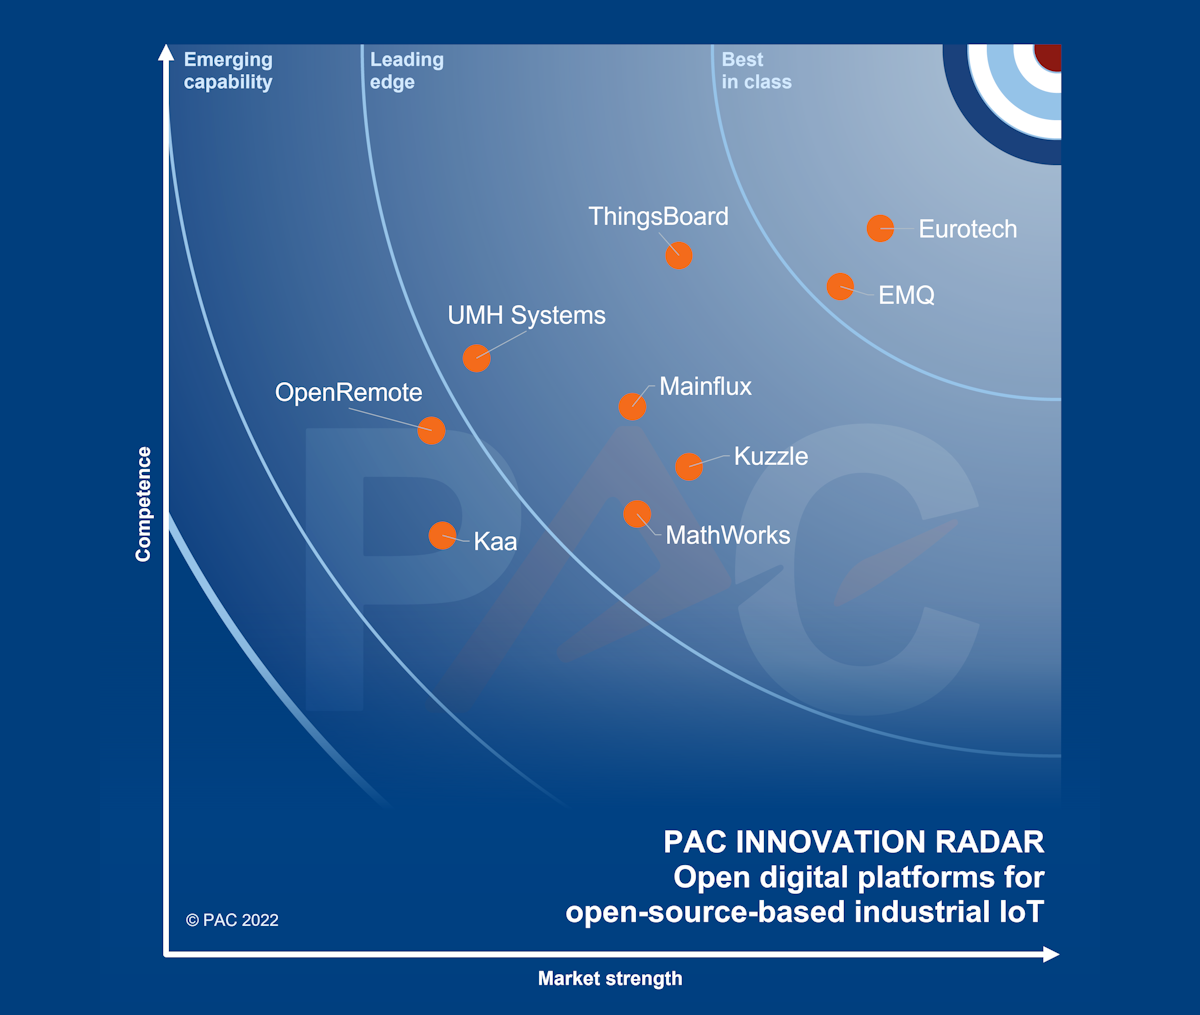 Eurotech mejora su posición como 'Mejor de su clase' en Plataformas digitales para el IoT industrial basadas en Open Source